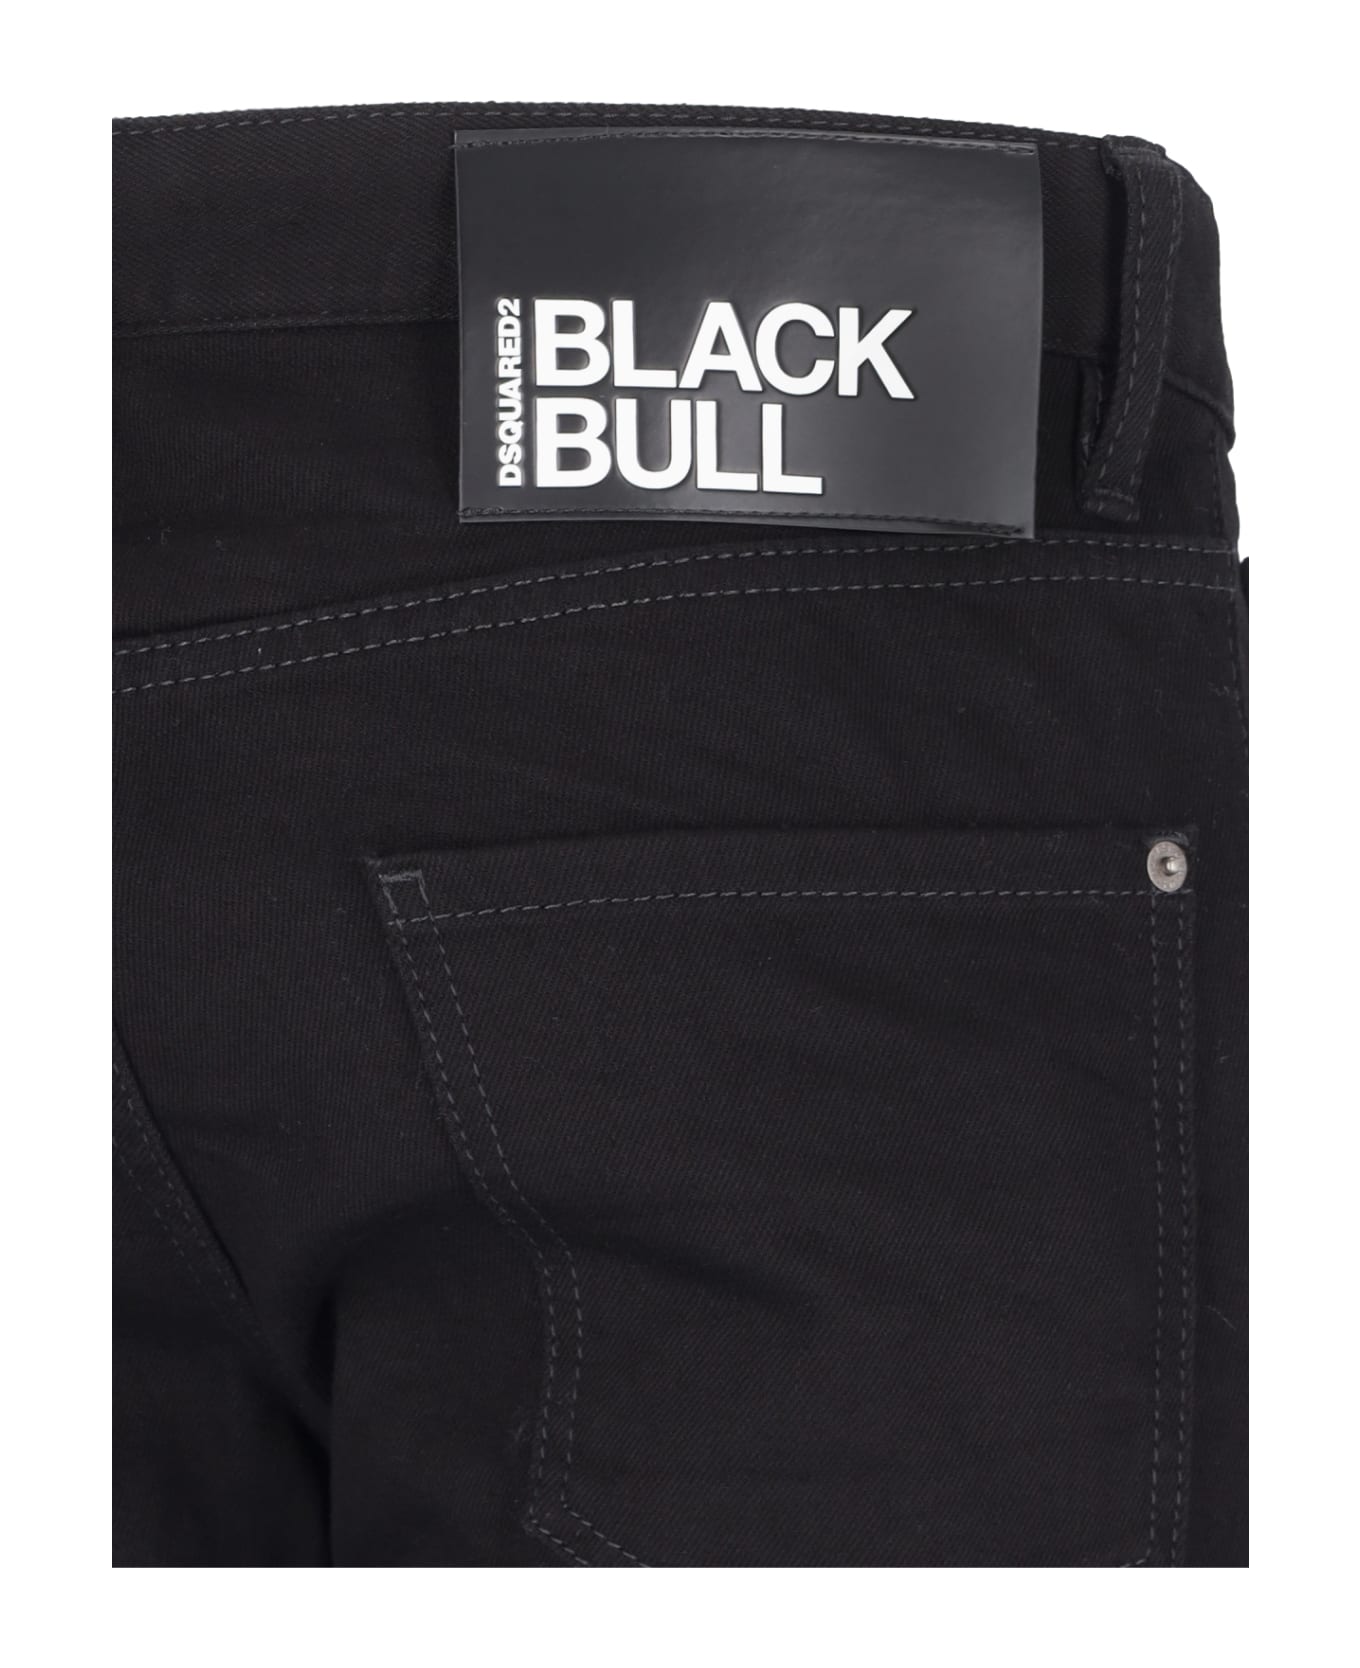 Dsquared2 'black Bull' Jeans - Black デニム